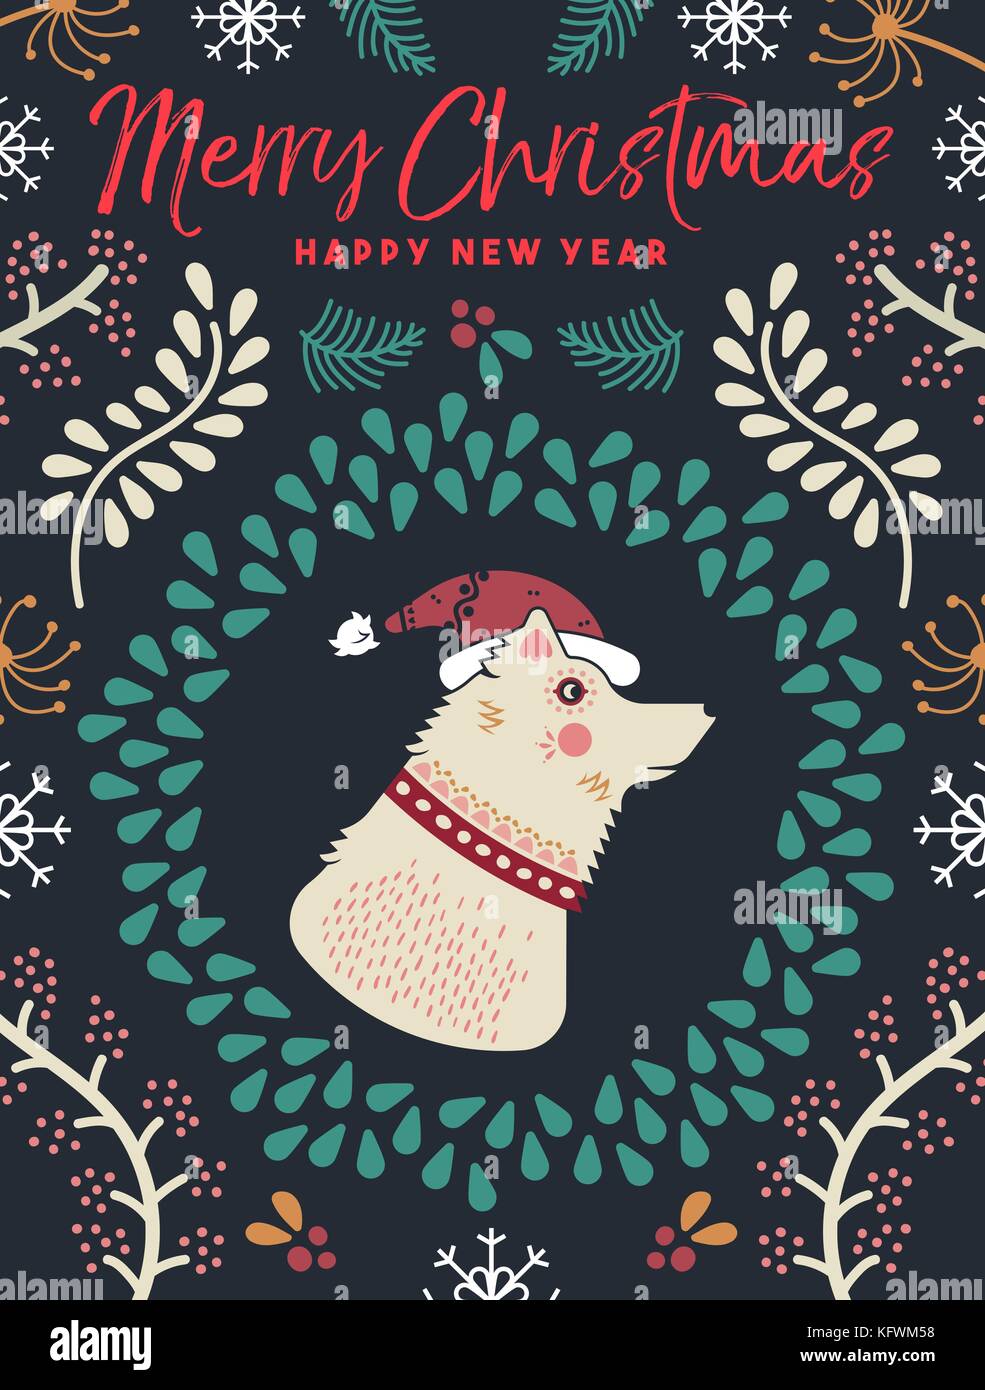 Joyeux noël bonne année Maison de vacances Carte de vœux. illustration portrait de chien avec la nature de l'hiver, les feuilles et fleurs décoration typographie devis. ep Illustration de Vecteur